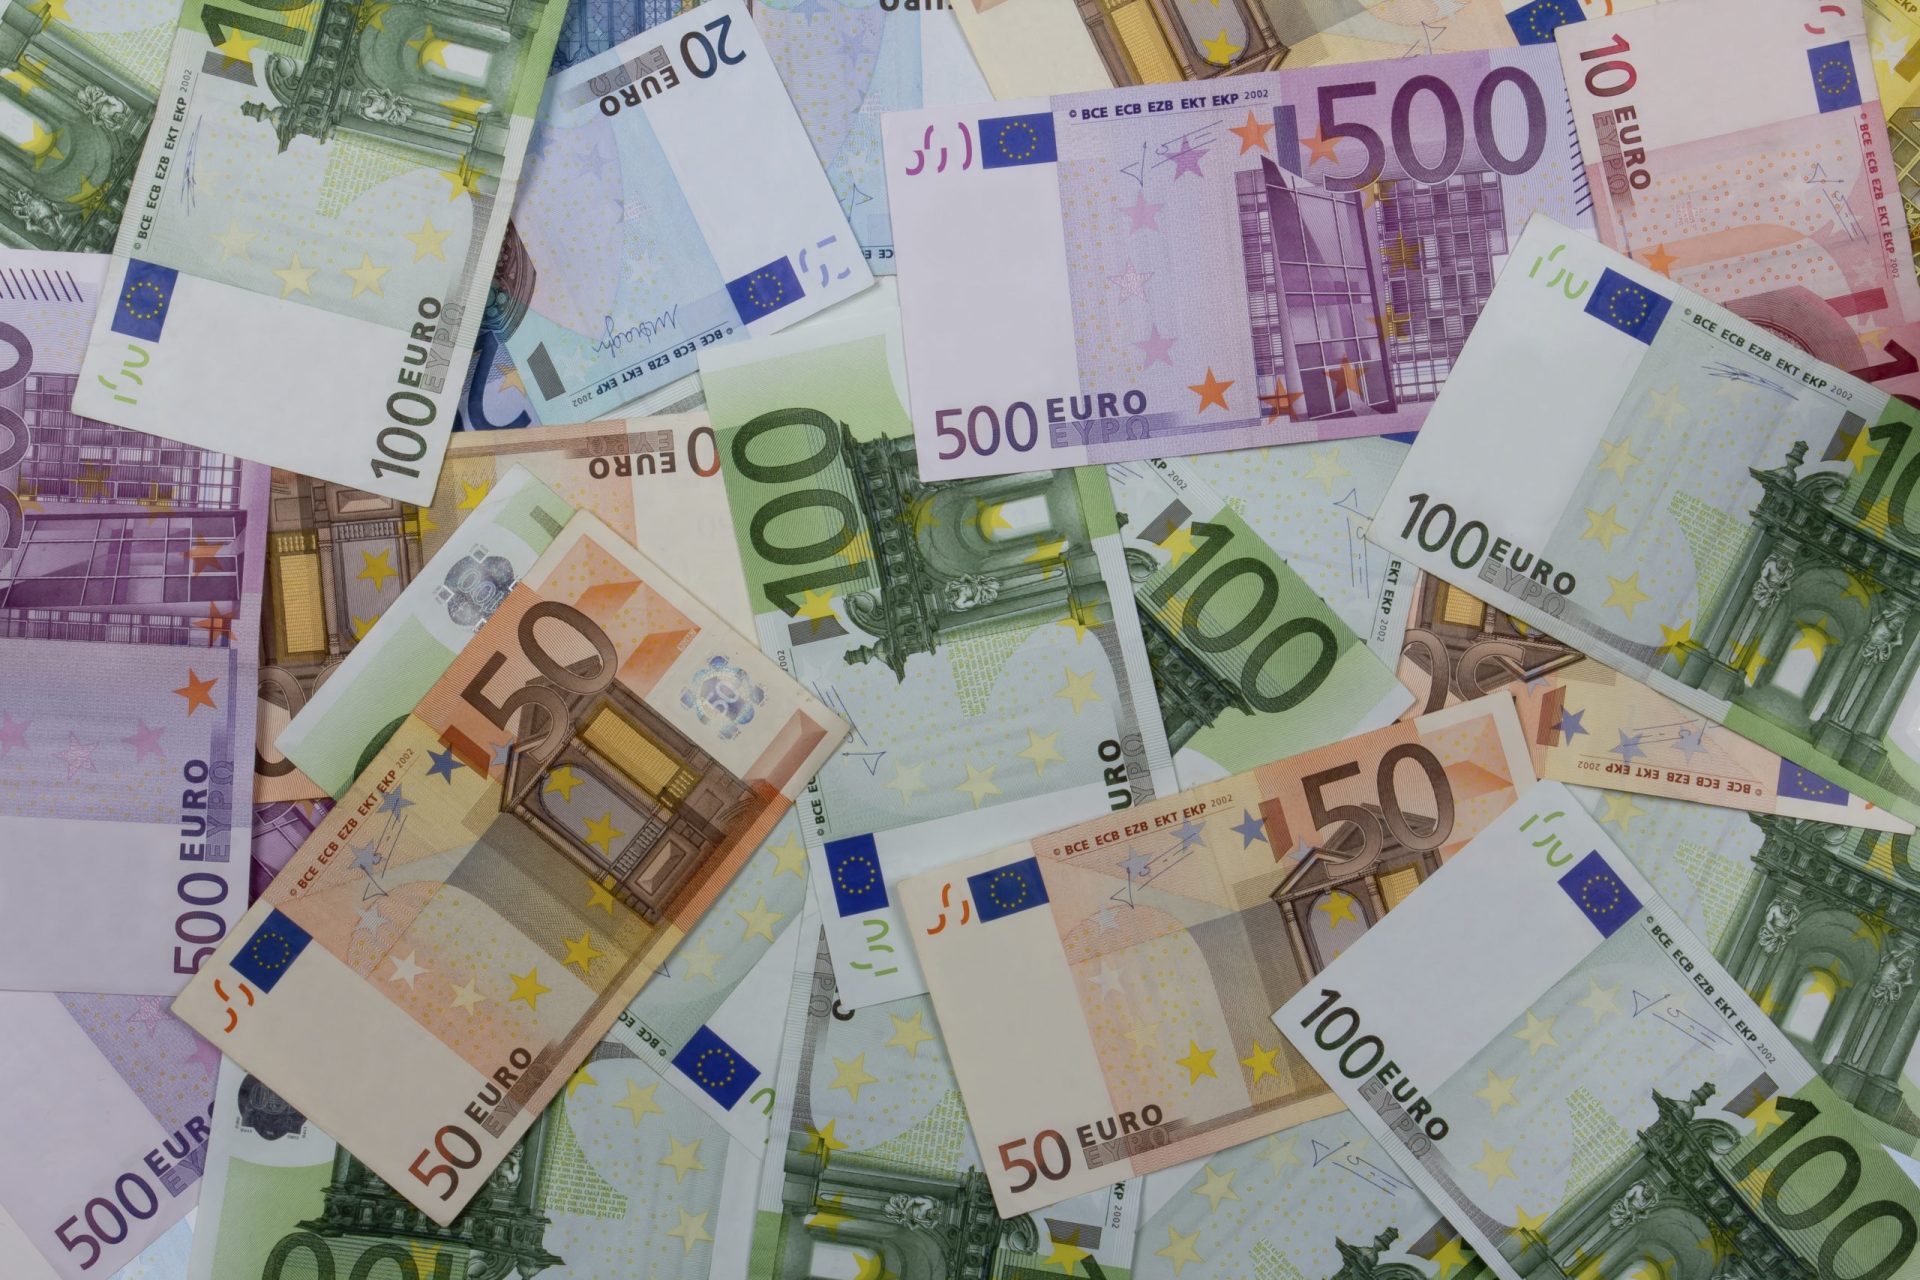 Estado com excedente de 546 milhões de euros até novembro